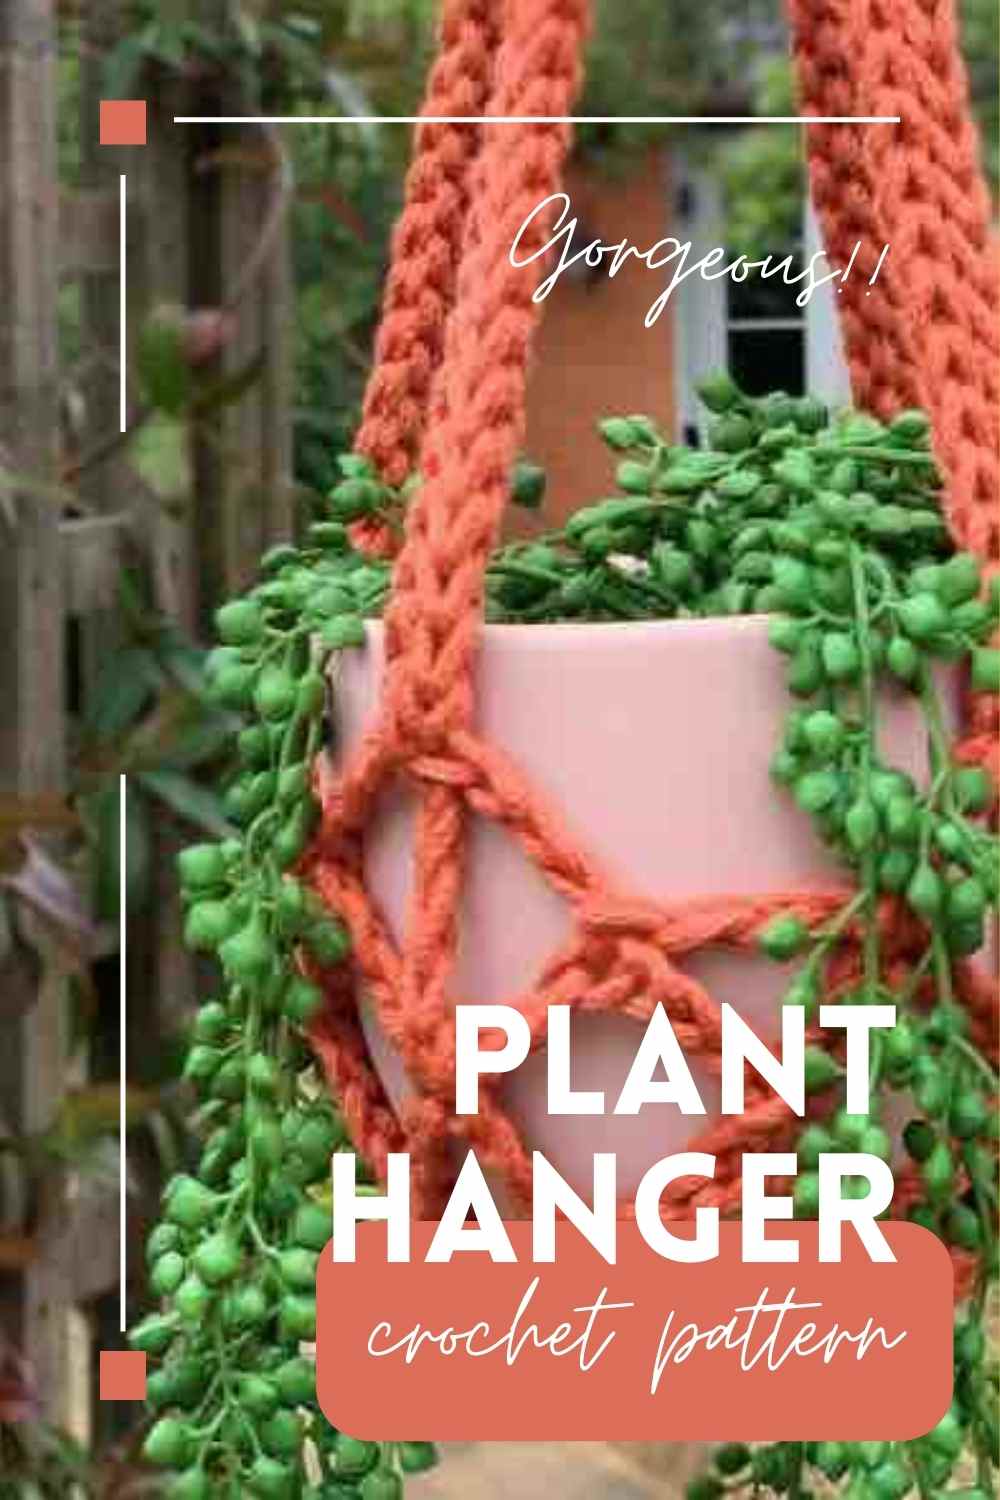 Plant-hanger-crochet-pattern